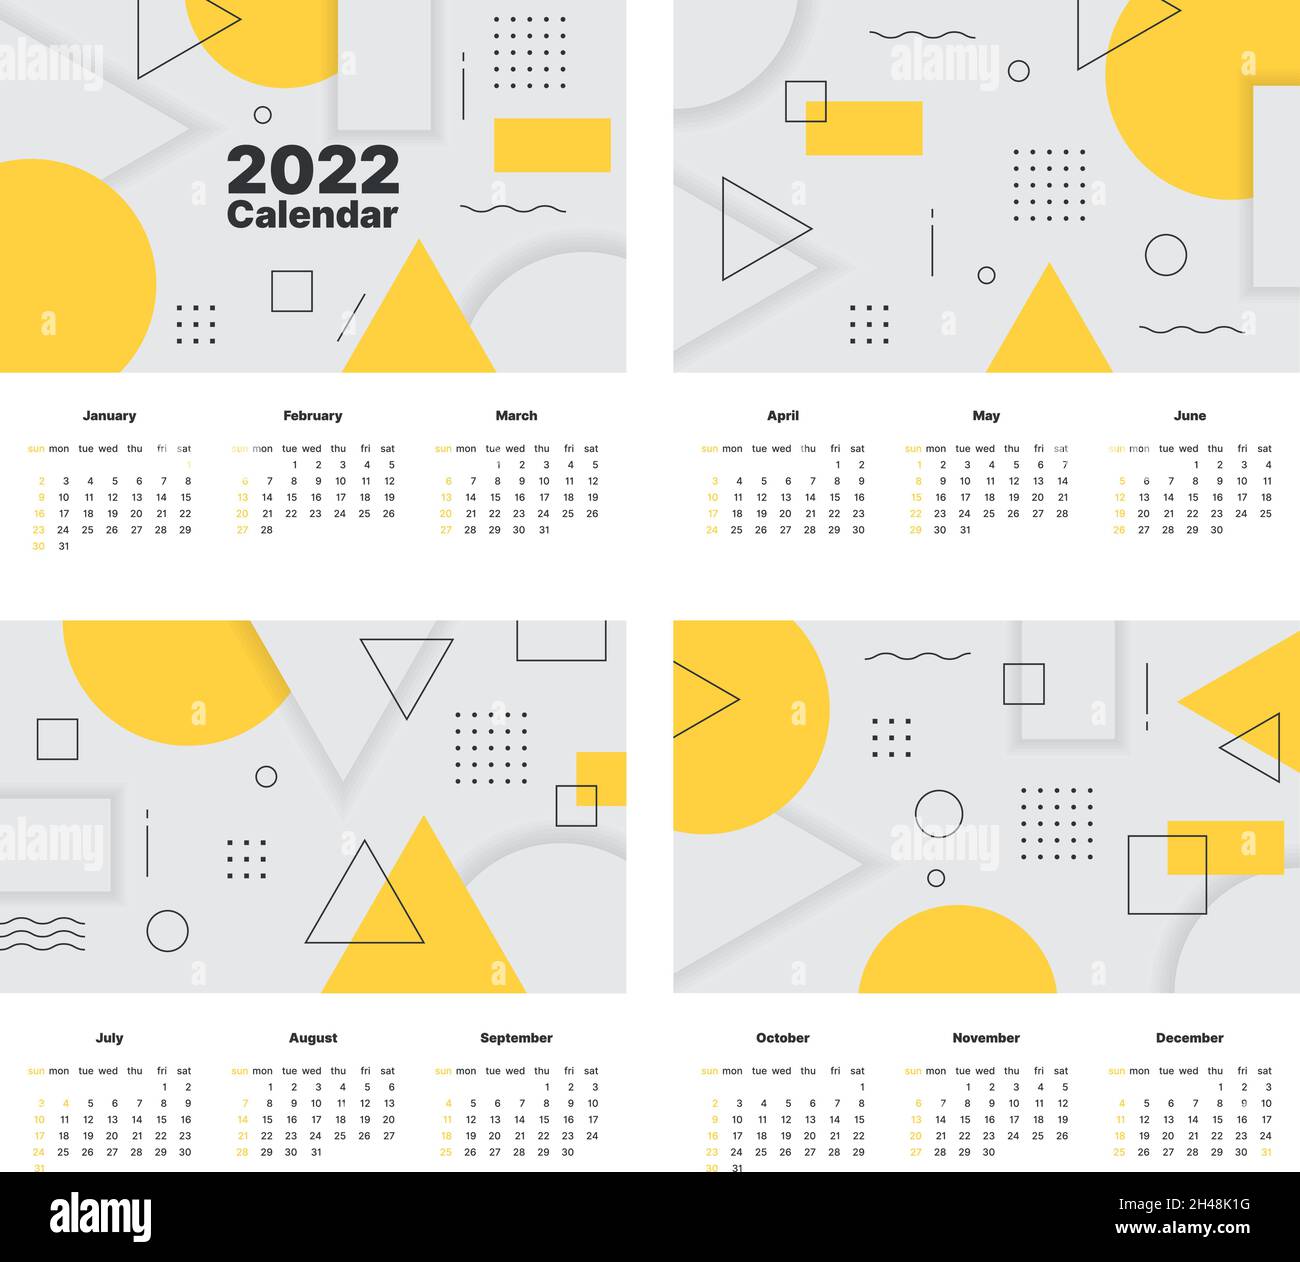 2022 Calendar Templates Printing Design Of Wall Calendar With Various